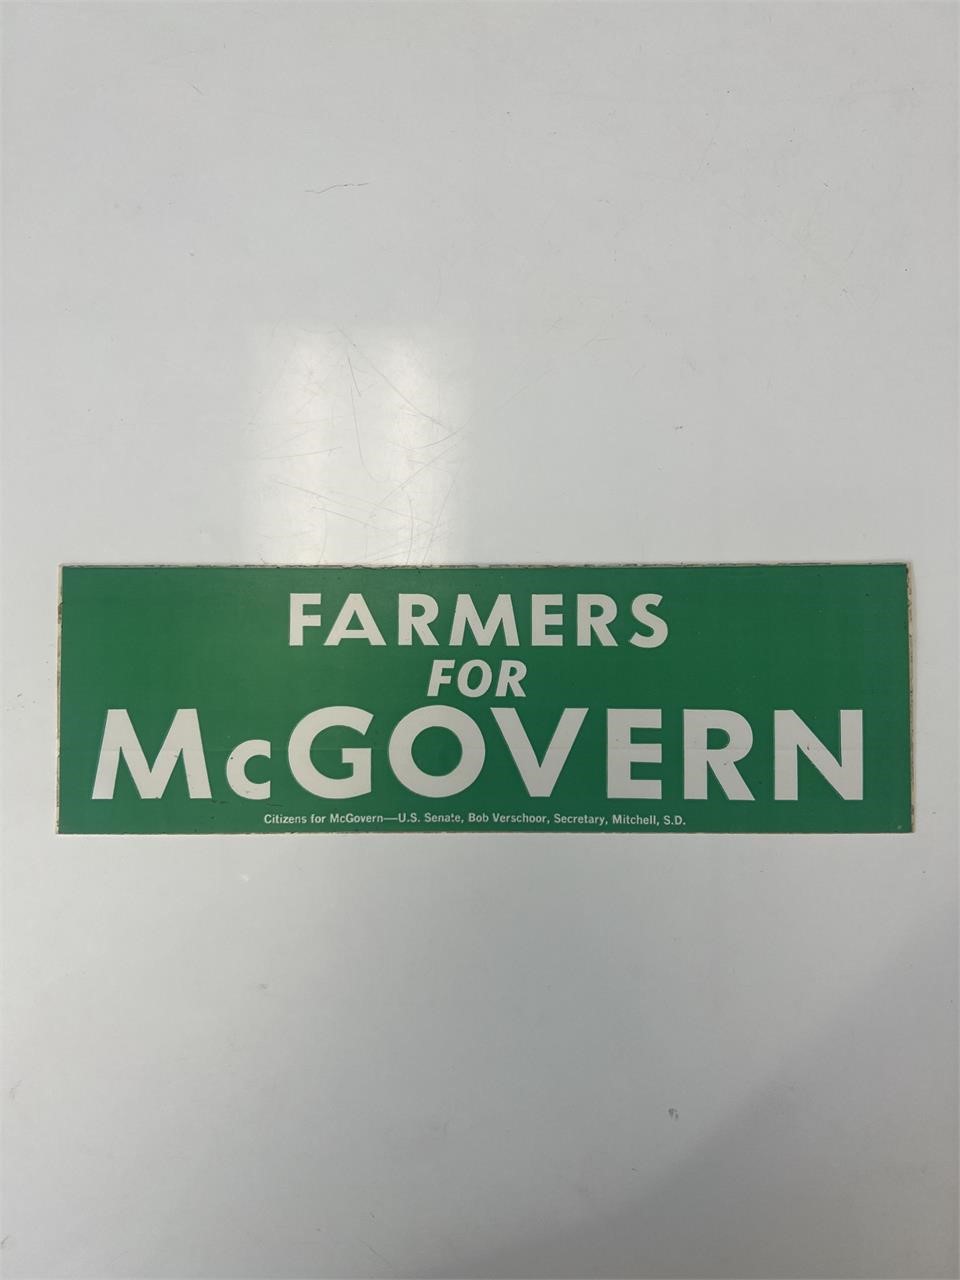 Farmers for McGovern campaign bumper sticker